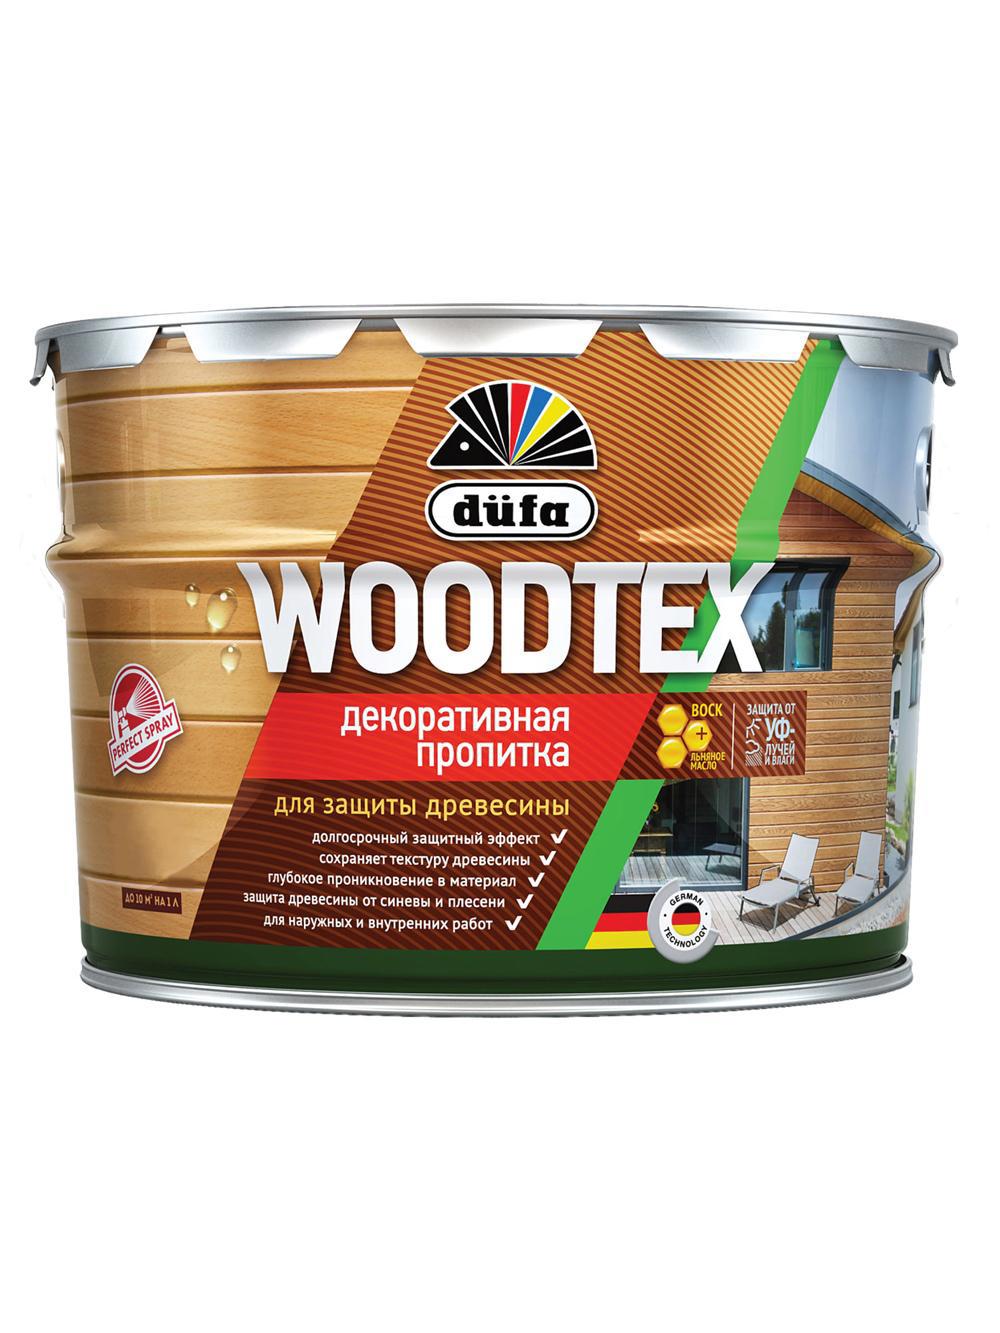 90194554 Пропитка декоративная для защиты древесины алкидная Woodtex махагон 3 л STLM-0128485 DUFA